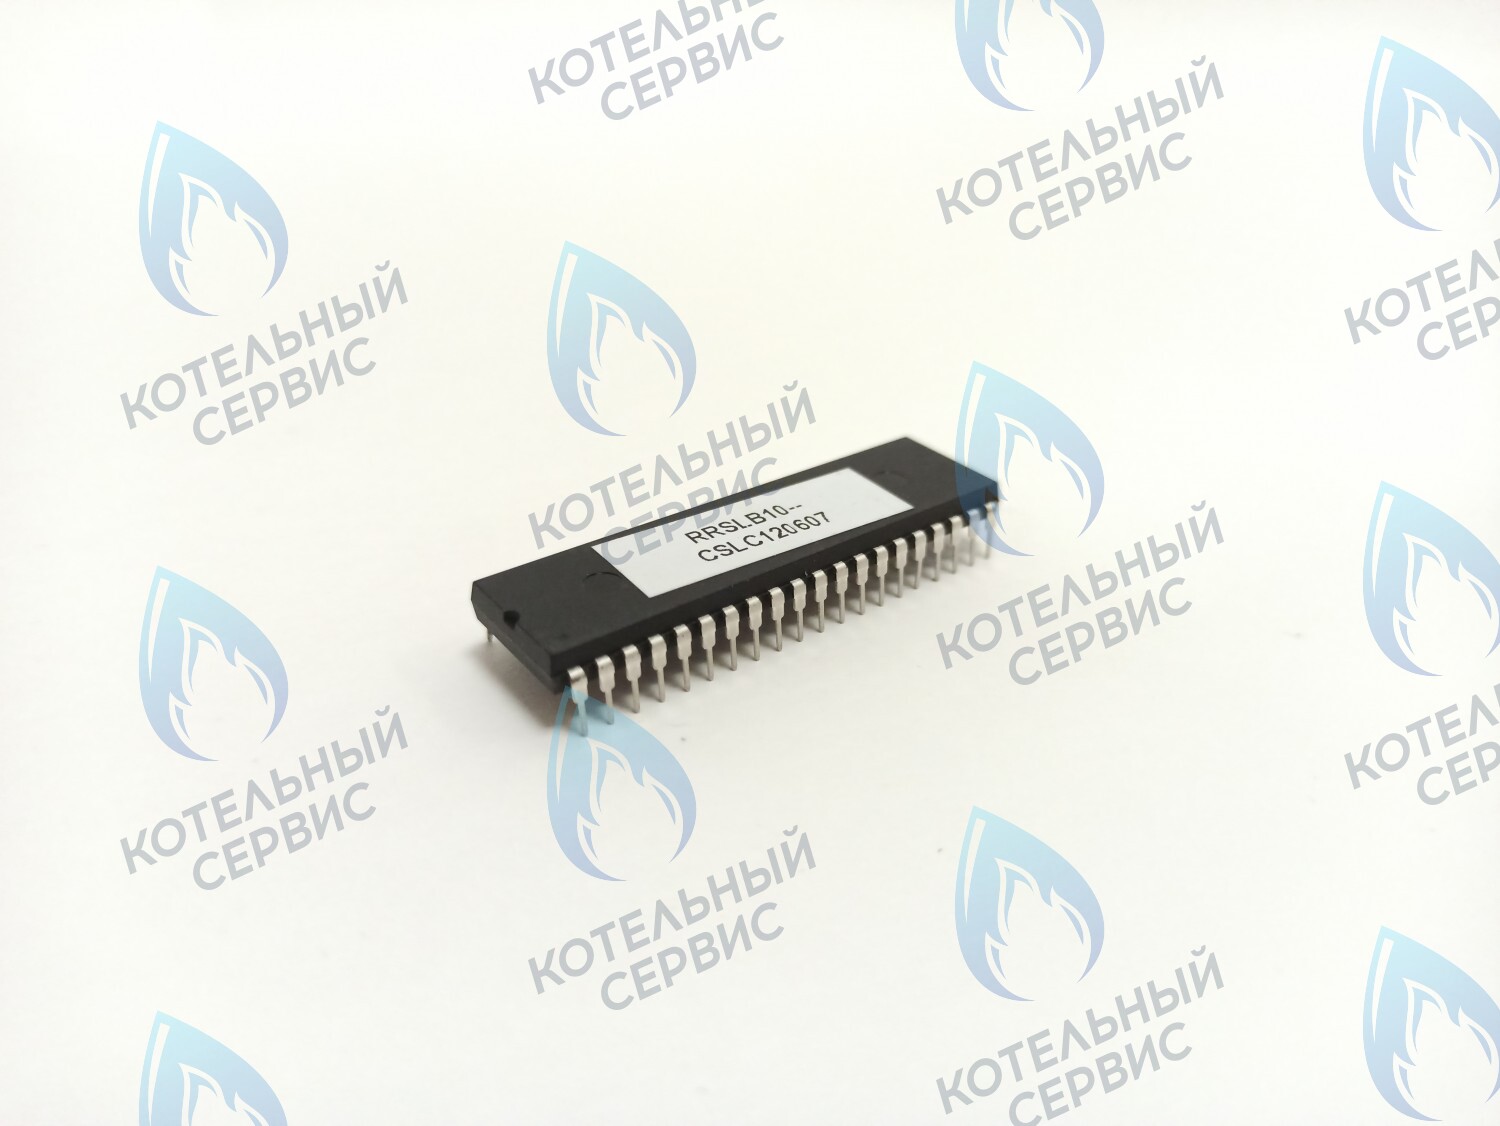 CB020-B10-845-SINGLE Процессор Electrolux Basic S 18/24/30 Fi (одноконтурный) газовый клапан SIT 845 RRSLB10-CSLC120607 (1310028B, AA04030025) в Оренбурге	